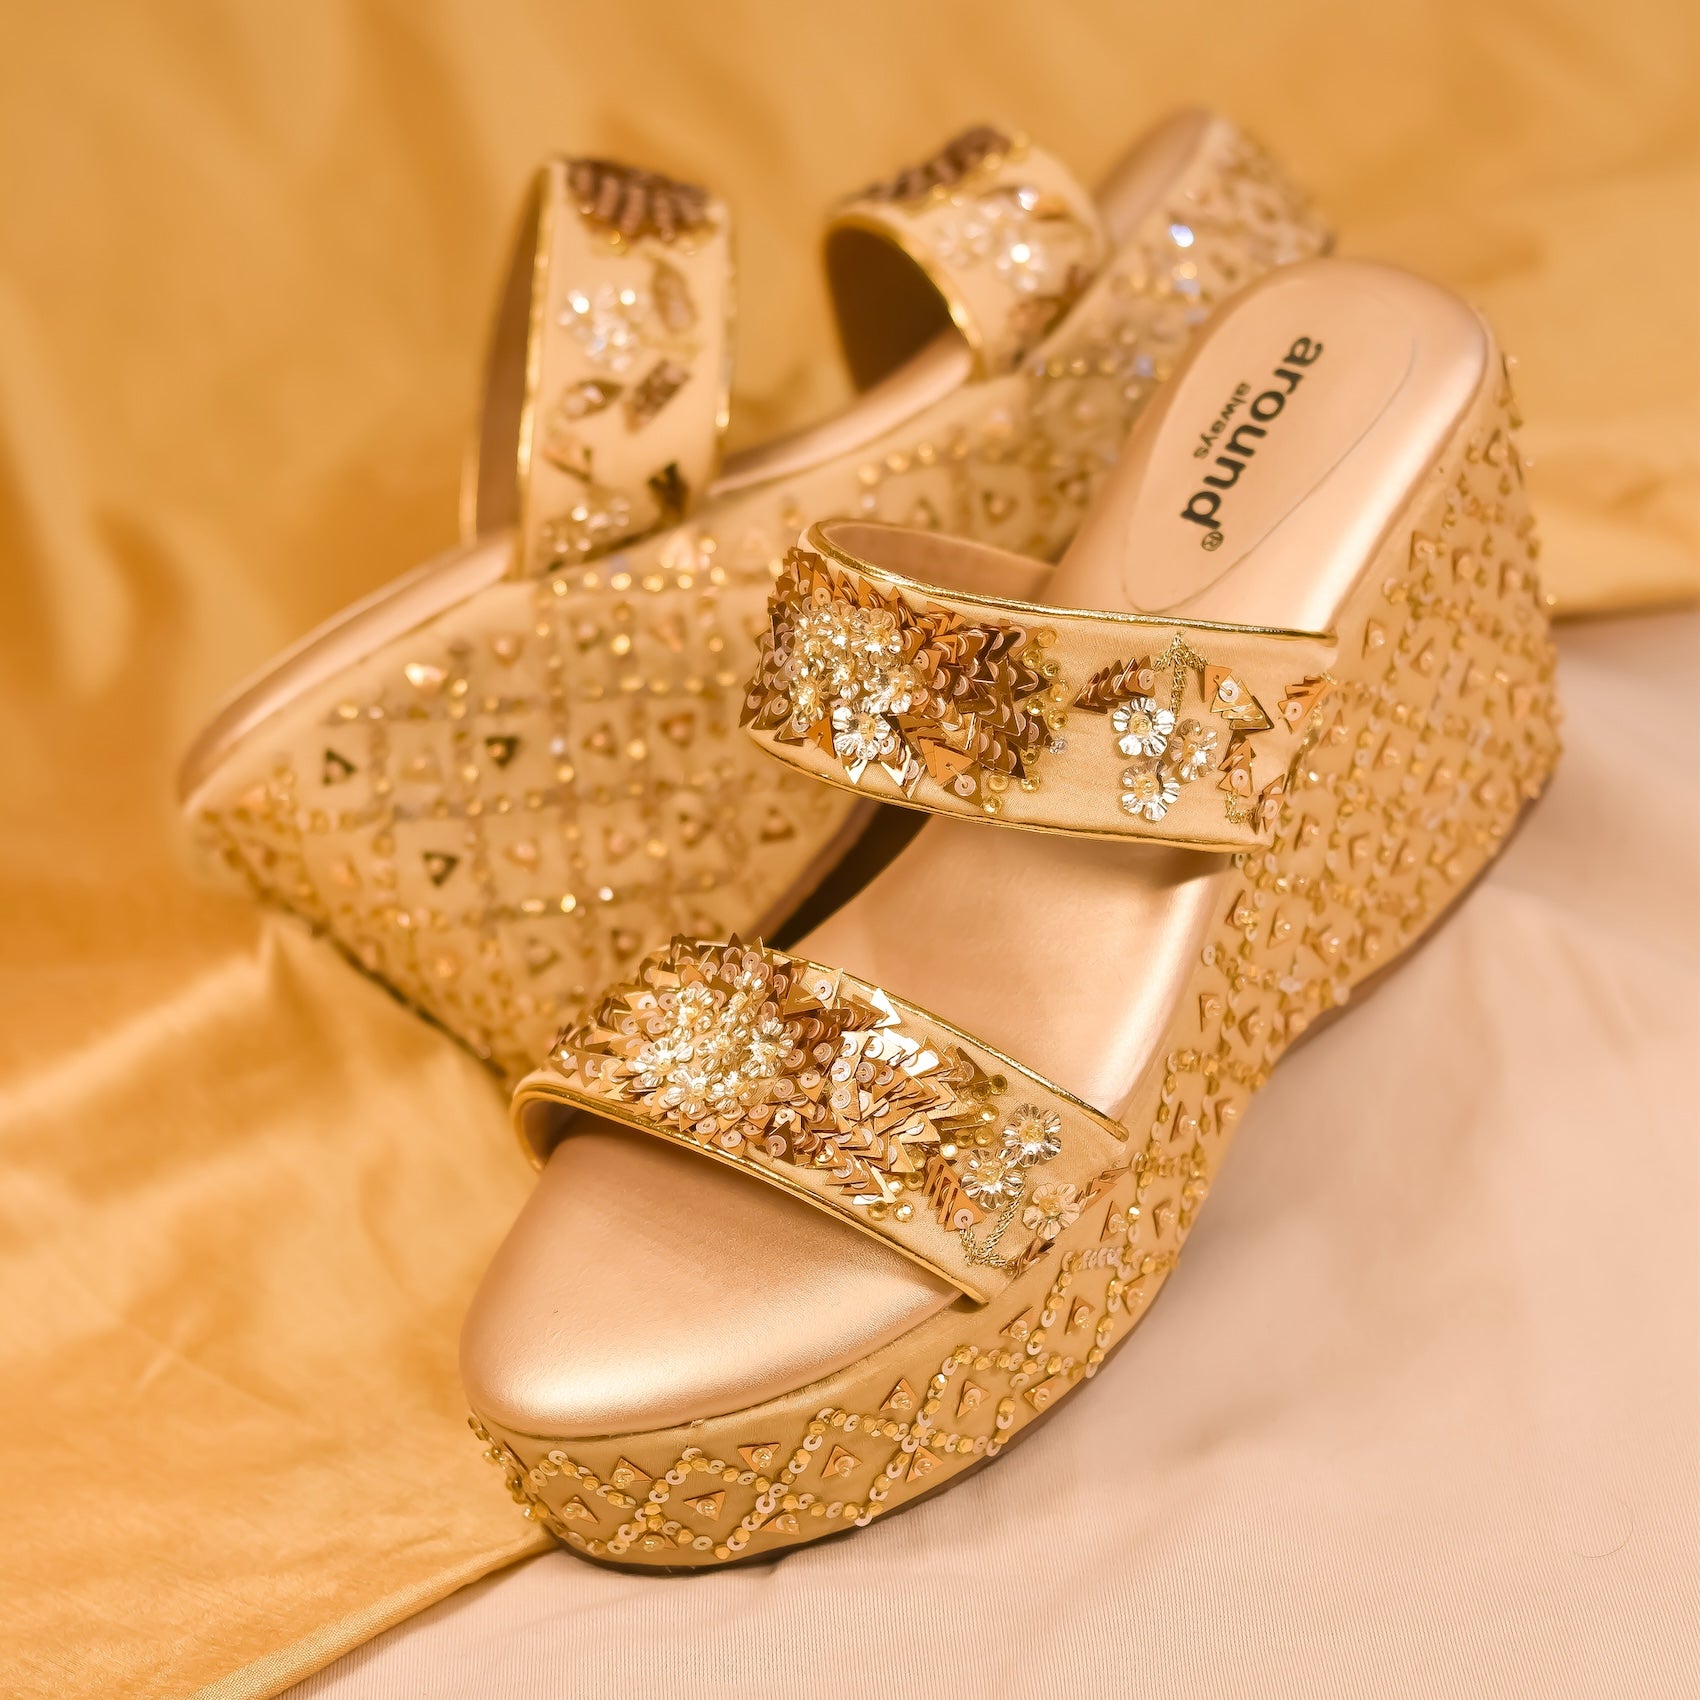 Premium golden heels for Indian brides